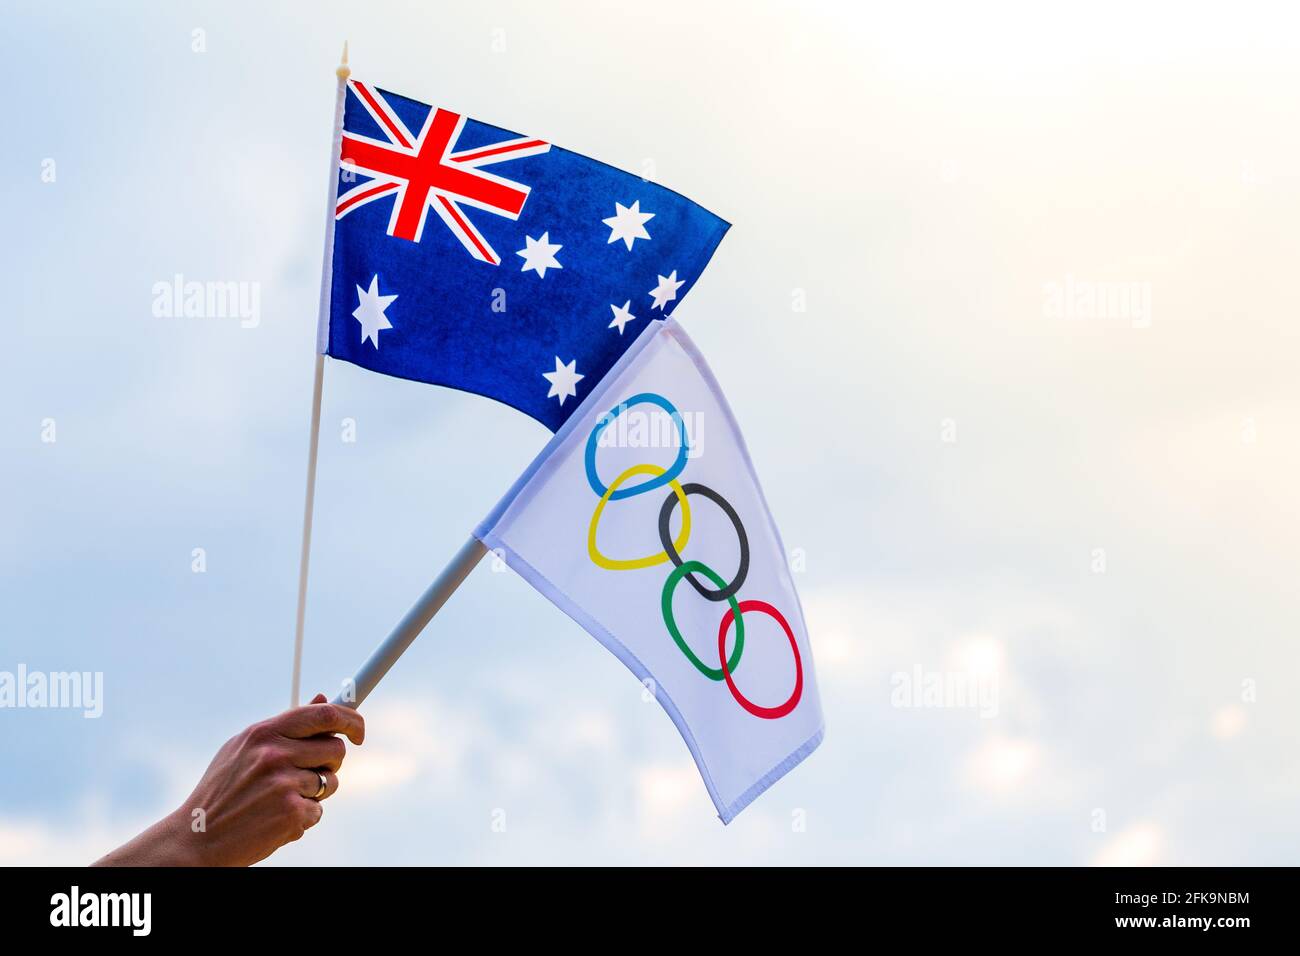 Fan sventolando la bandiera nazionale dell'Australia e la bandiera olimpica con anelli simbolo delle olimpiadi. Foto Stock